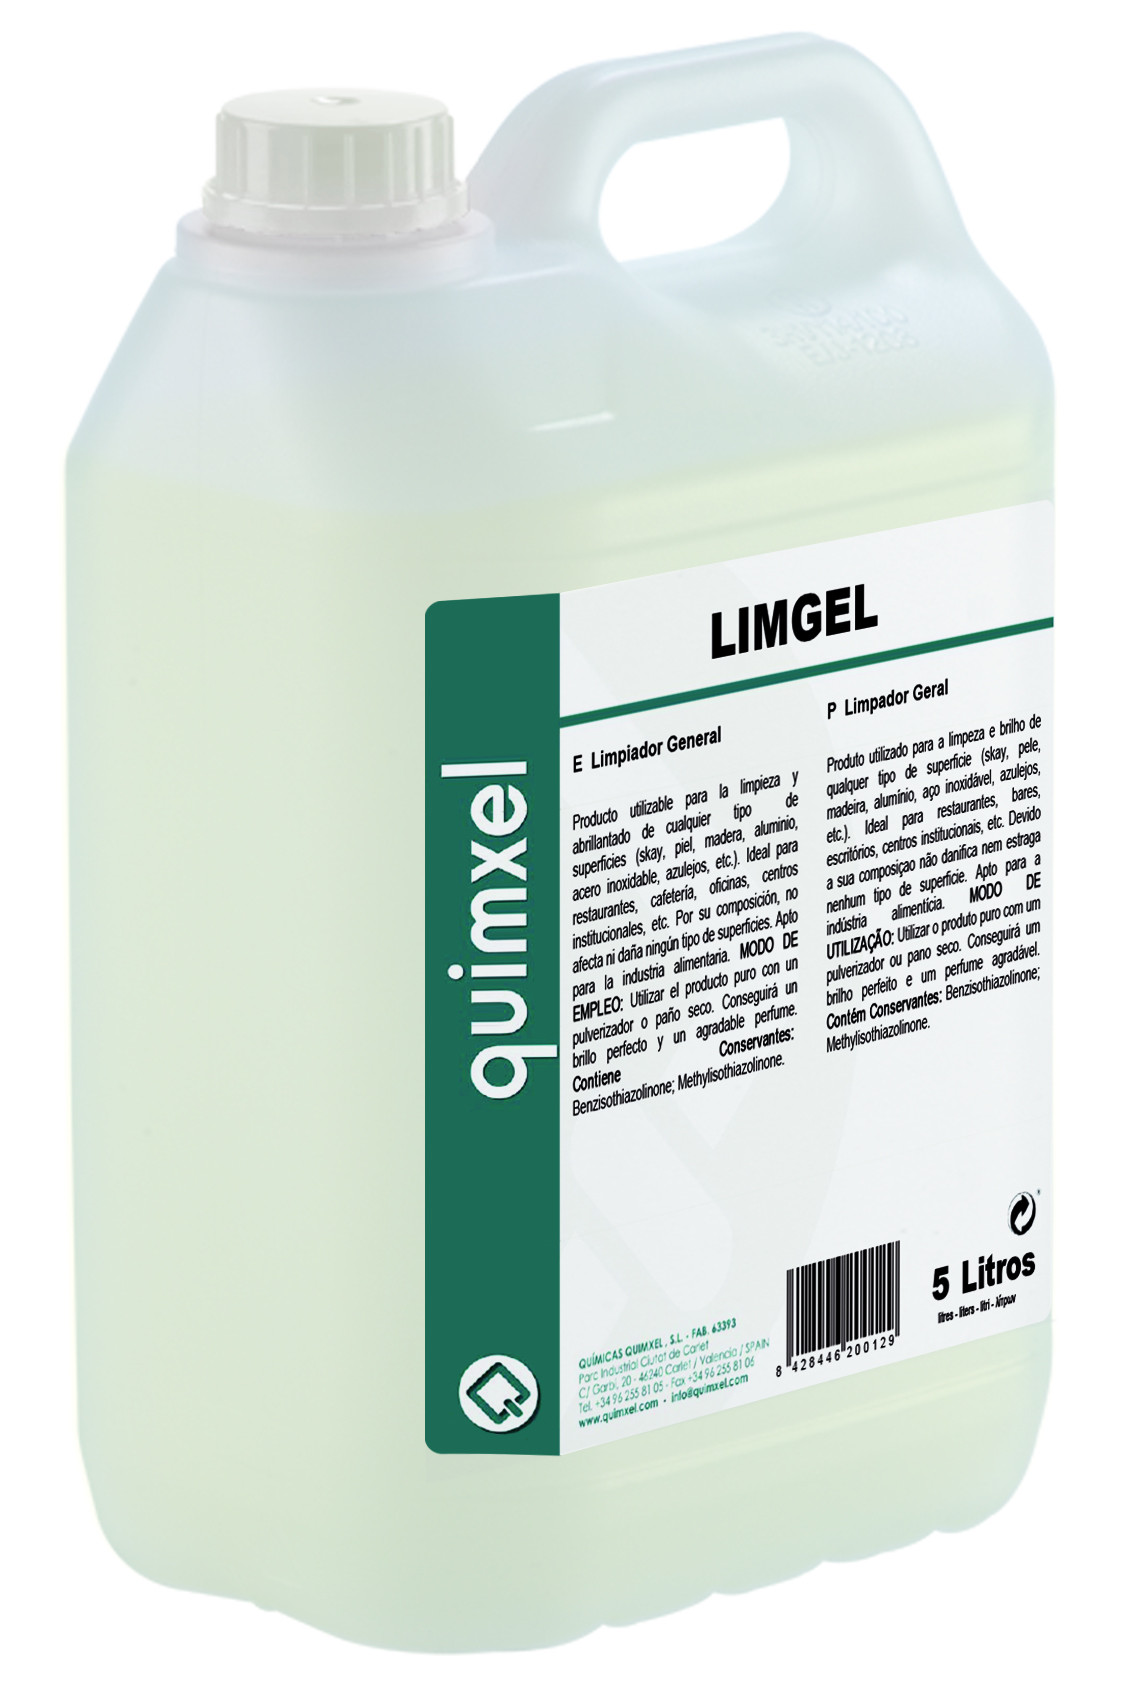 Limpiador General. LIMGEL (750 ml y 5LTS)